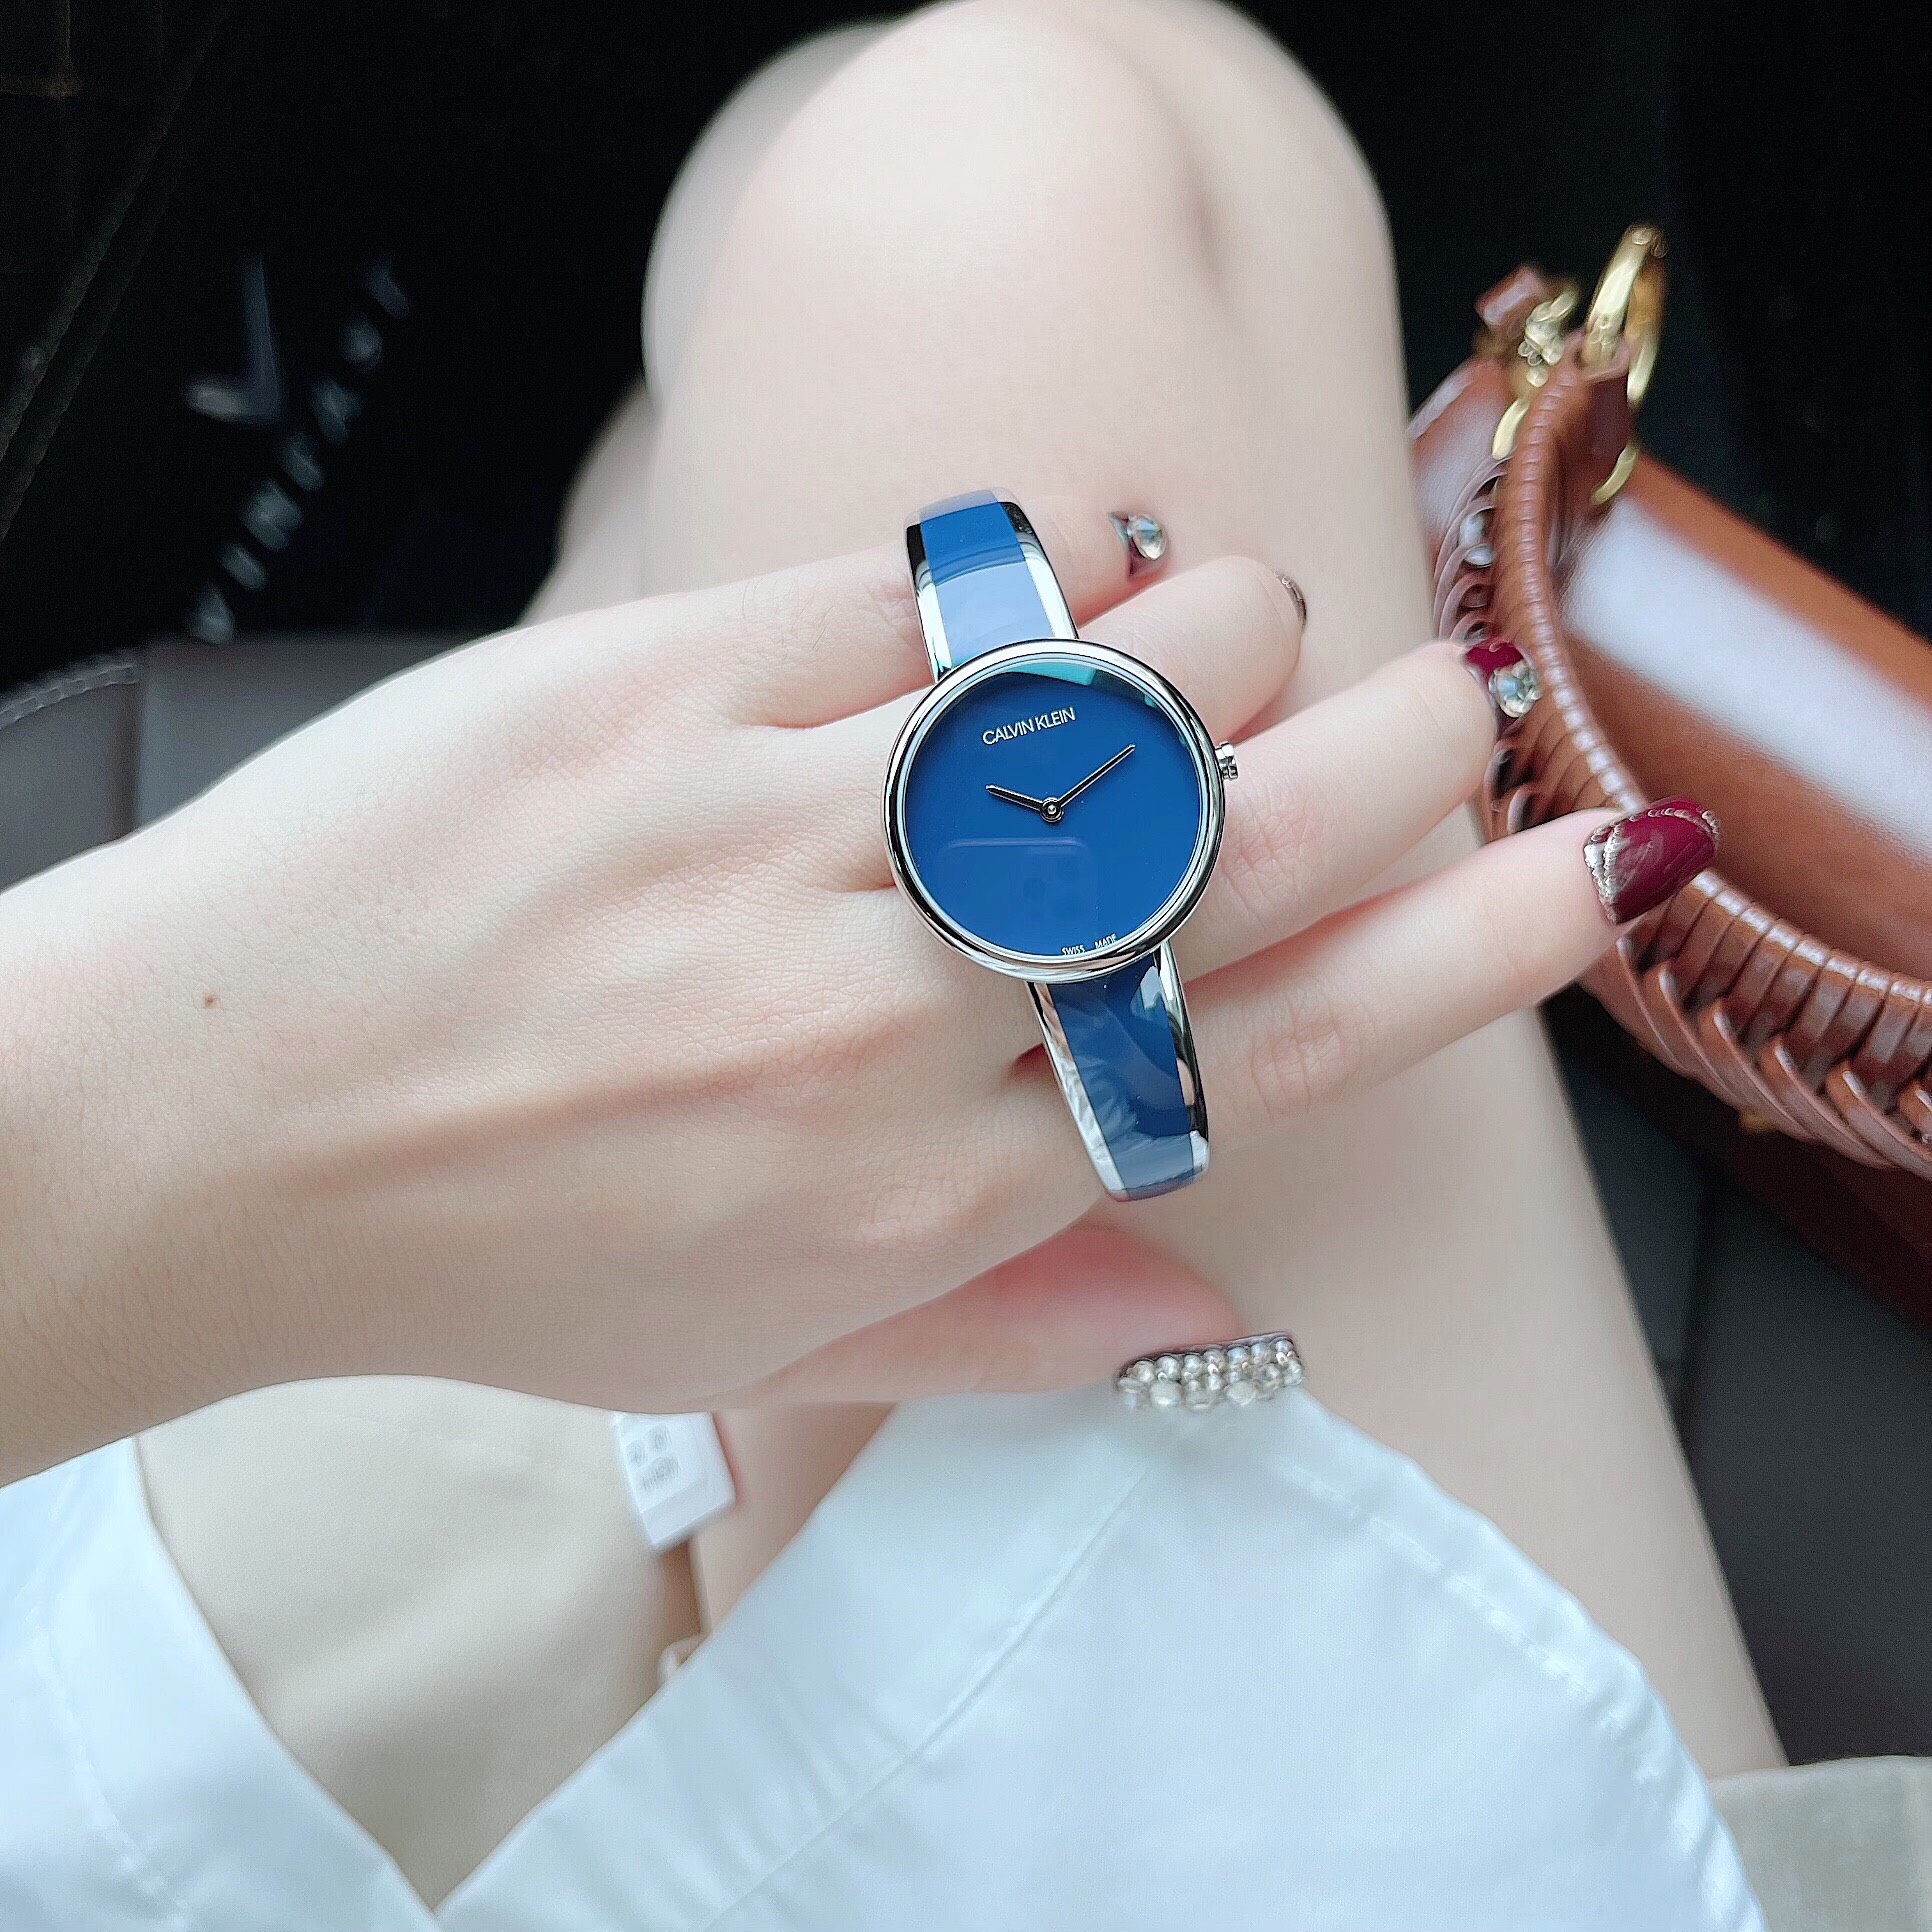 Đồng hồ nữ Calvin Klein dây kiềng màu xanh navy: Sự kỳ diệu của sự hiếm hoi và ghiền mê